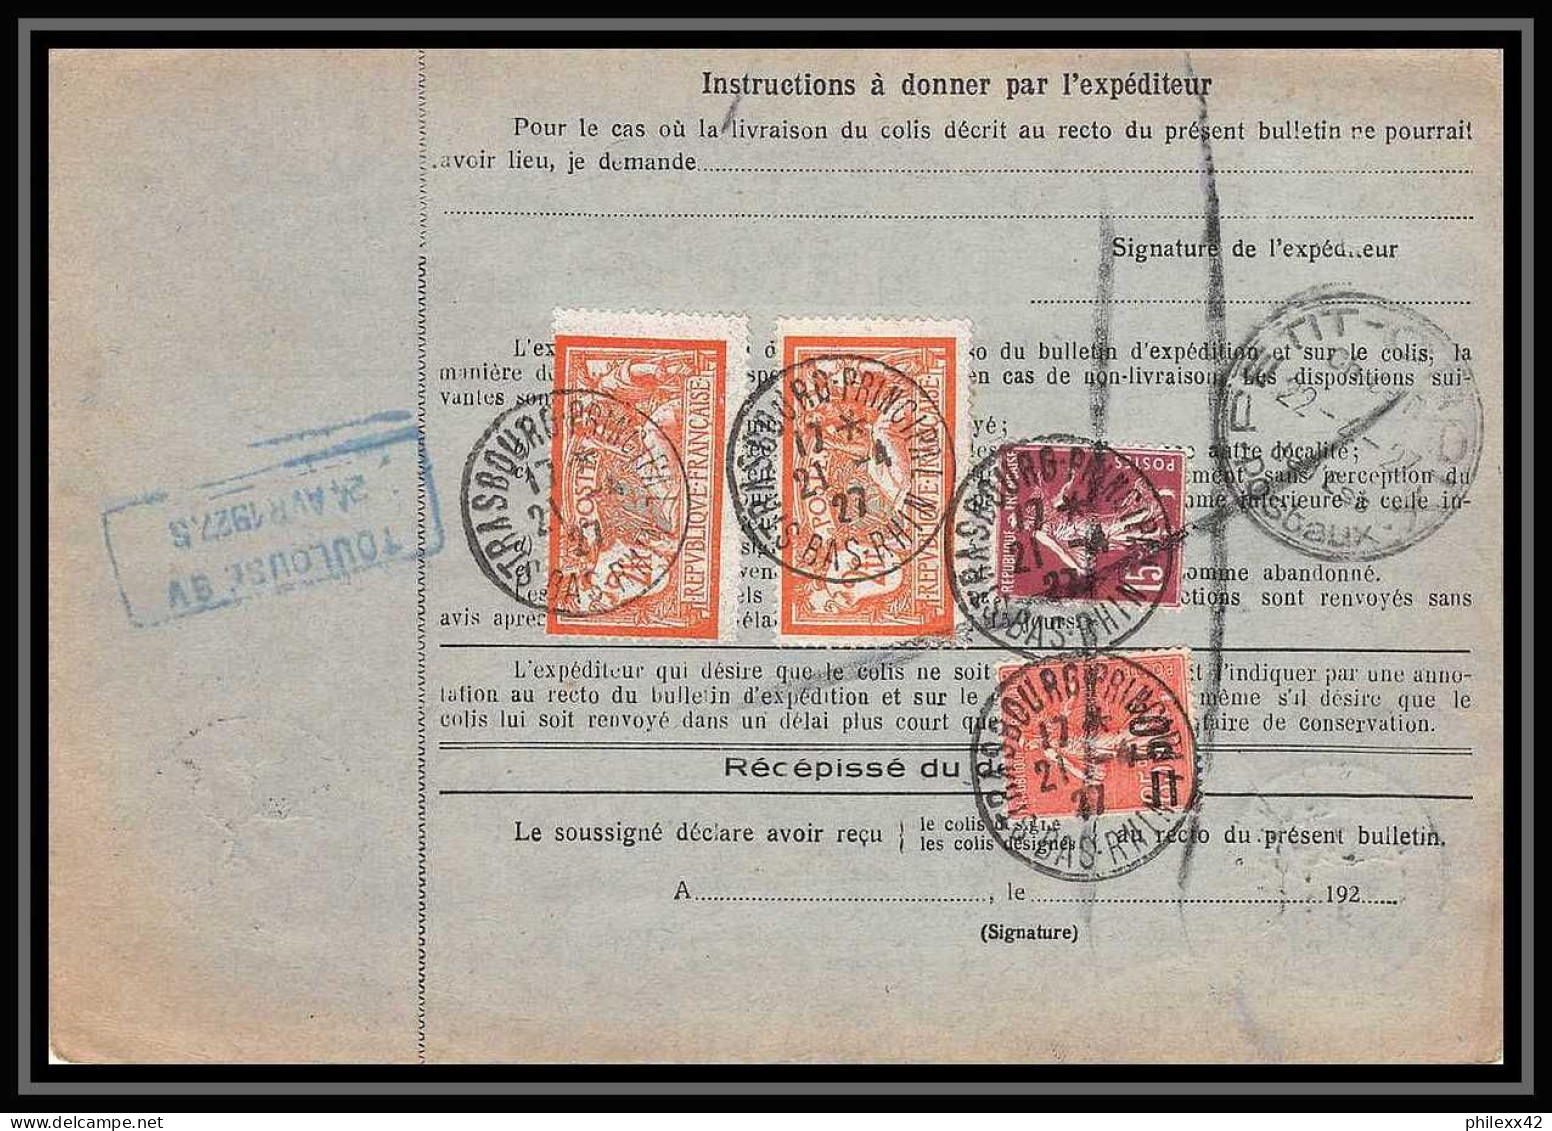 25086 Bulletin D'expédition France Colis Postaux Fiscal Haut Rhin 1927 Strasbourg Semeuse Merson 145 Alsace-Lorraine  - Storia Postale